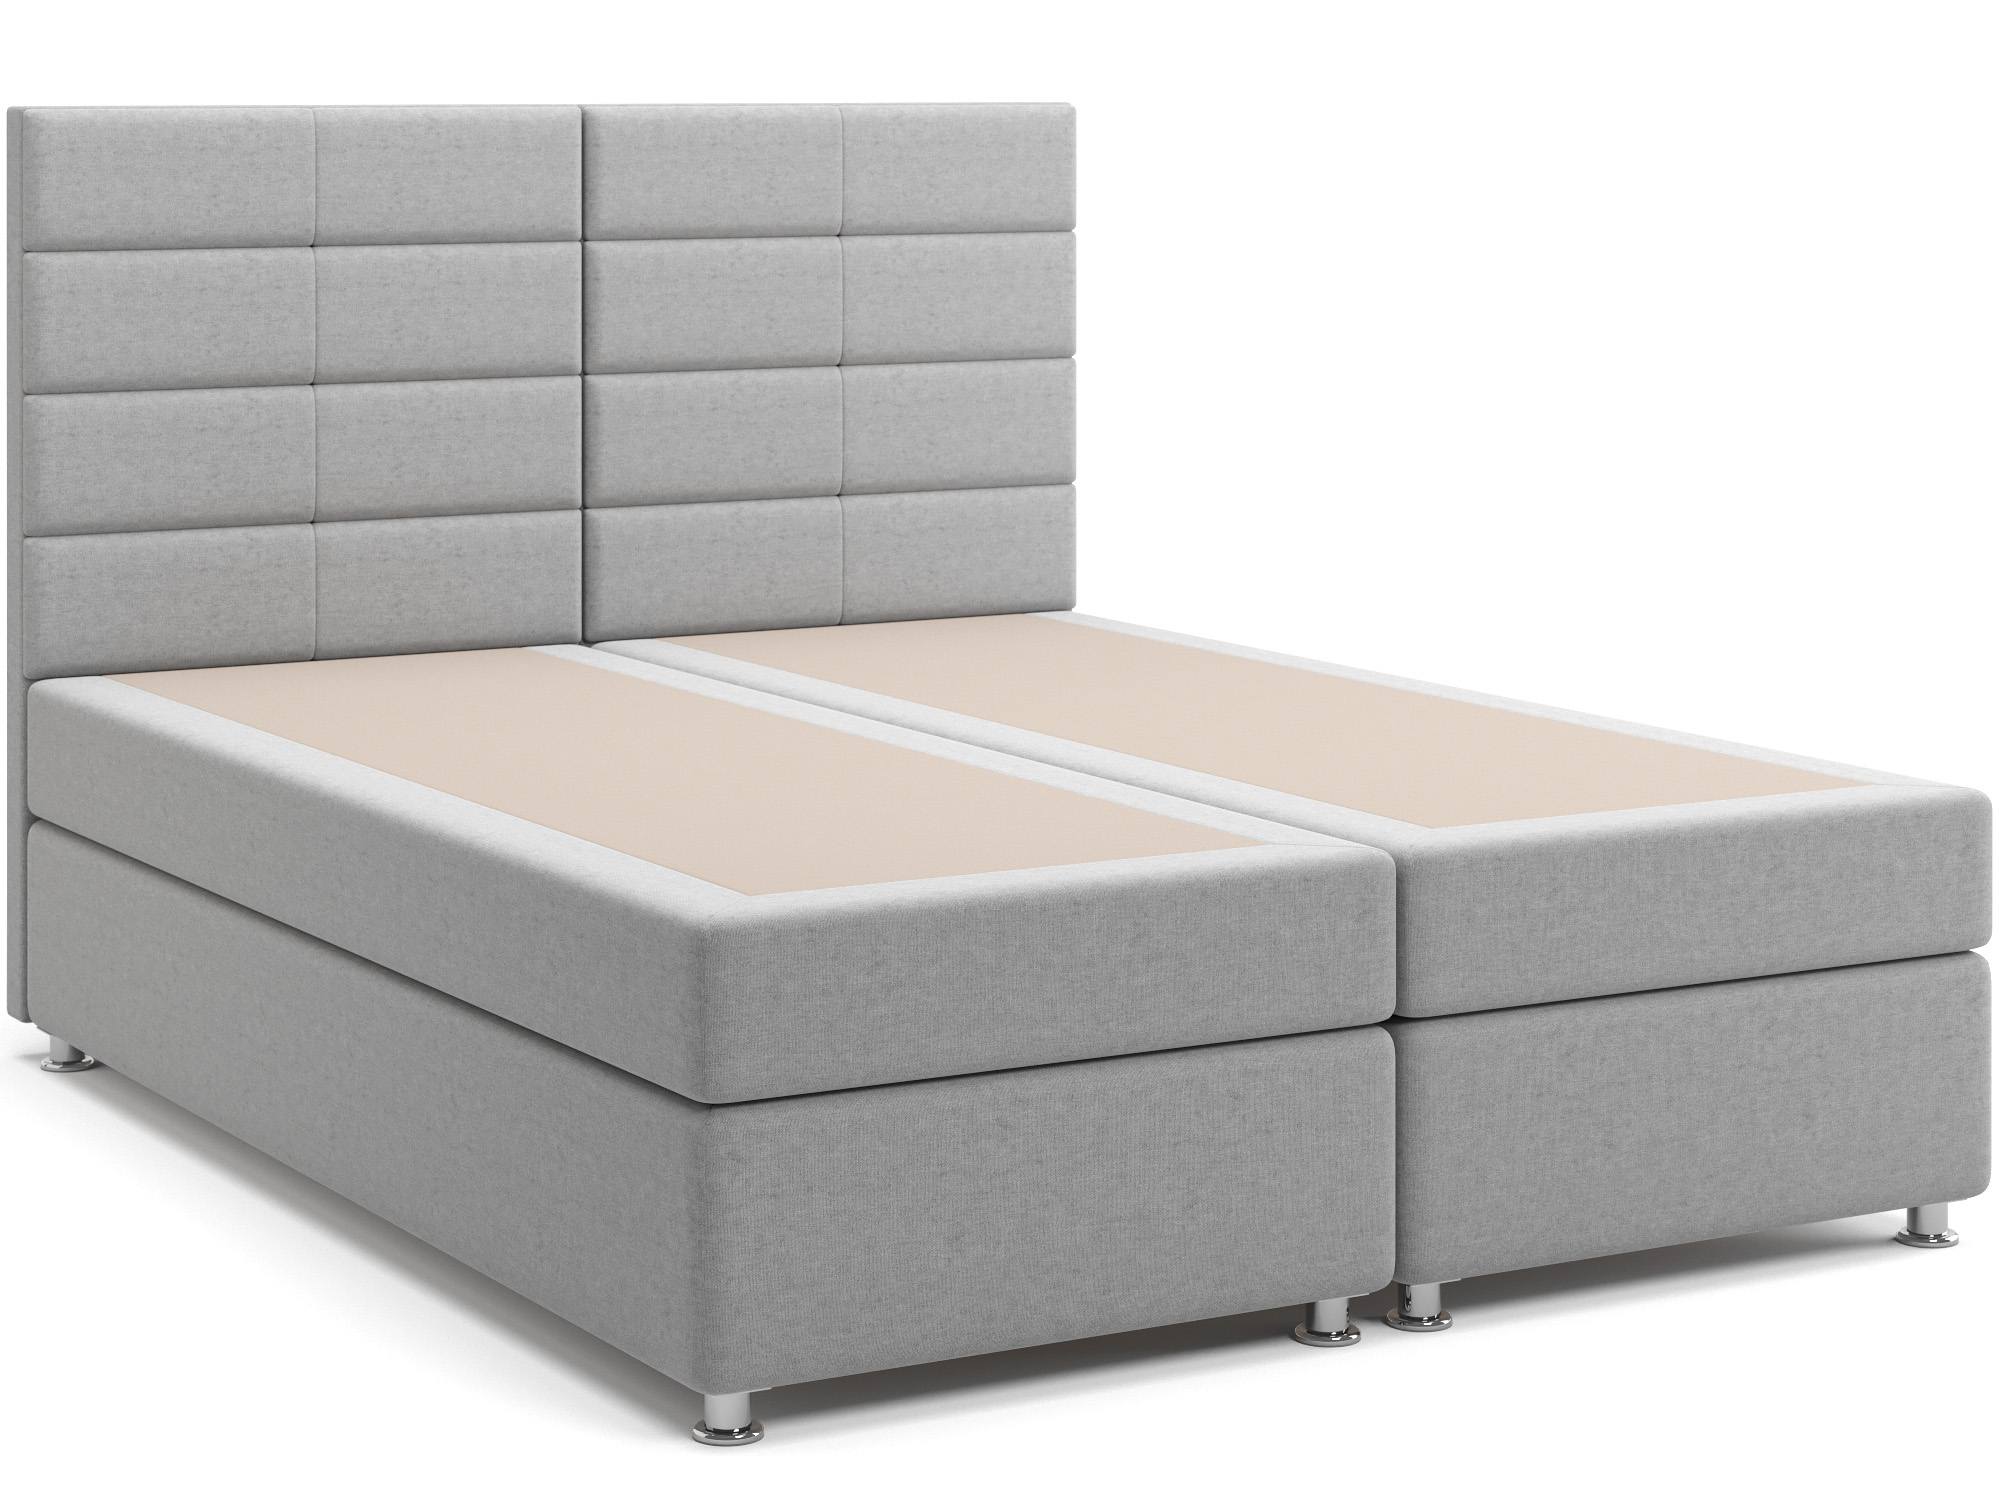 Кровать с матрасом и зависимым пружинным блоком Гаванна (160х200) Box Spring Светло-серый, ДСП, ДВП кровать на 1400 гаванна уют